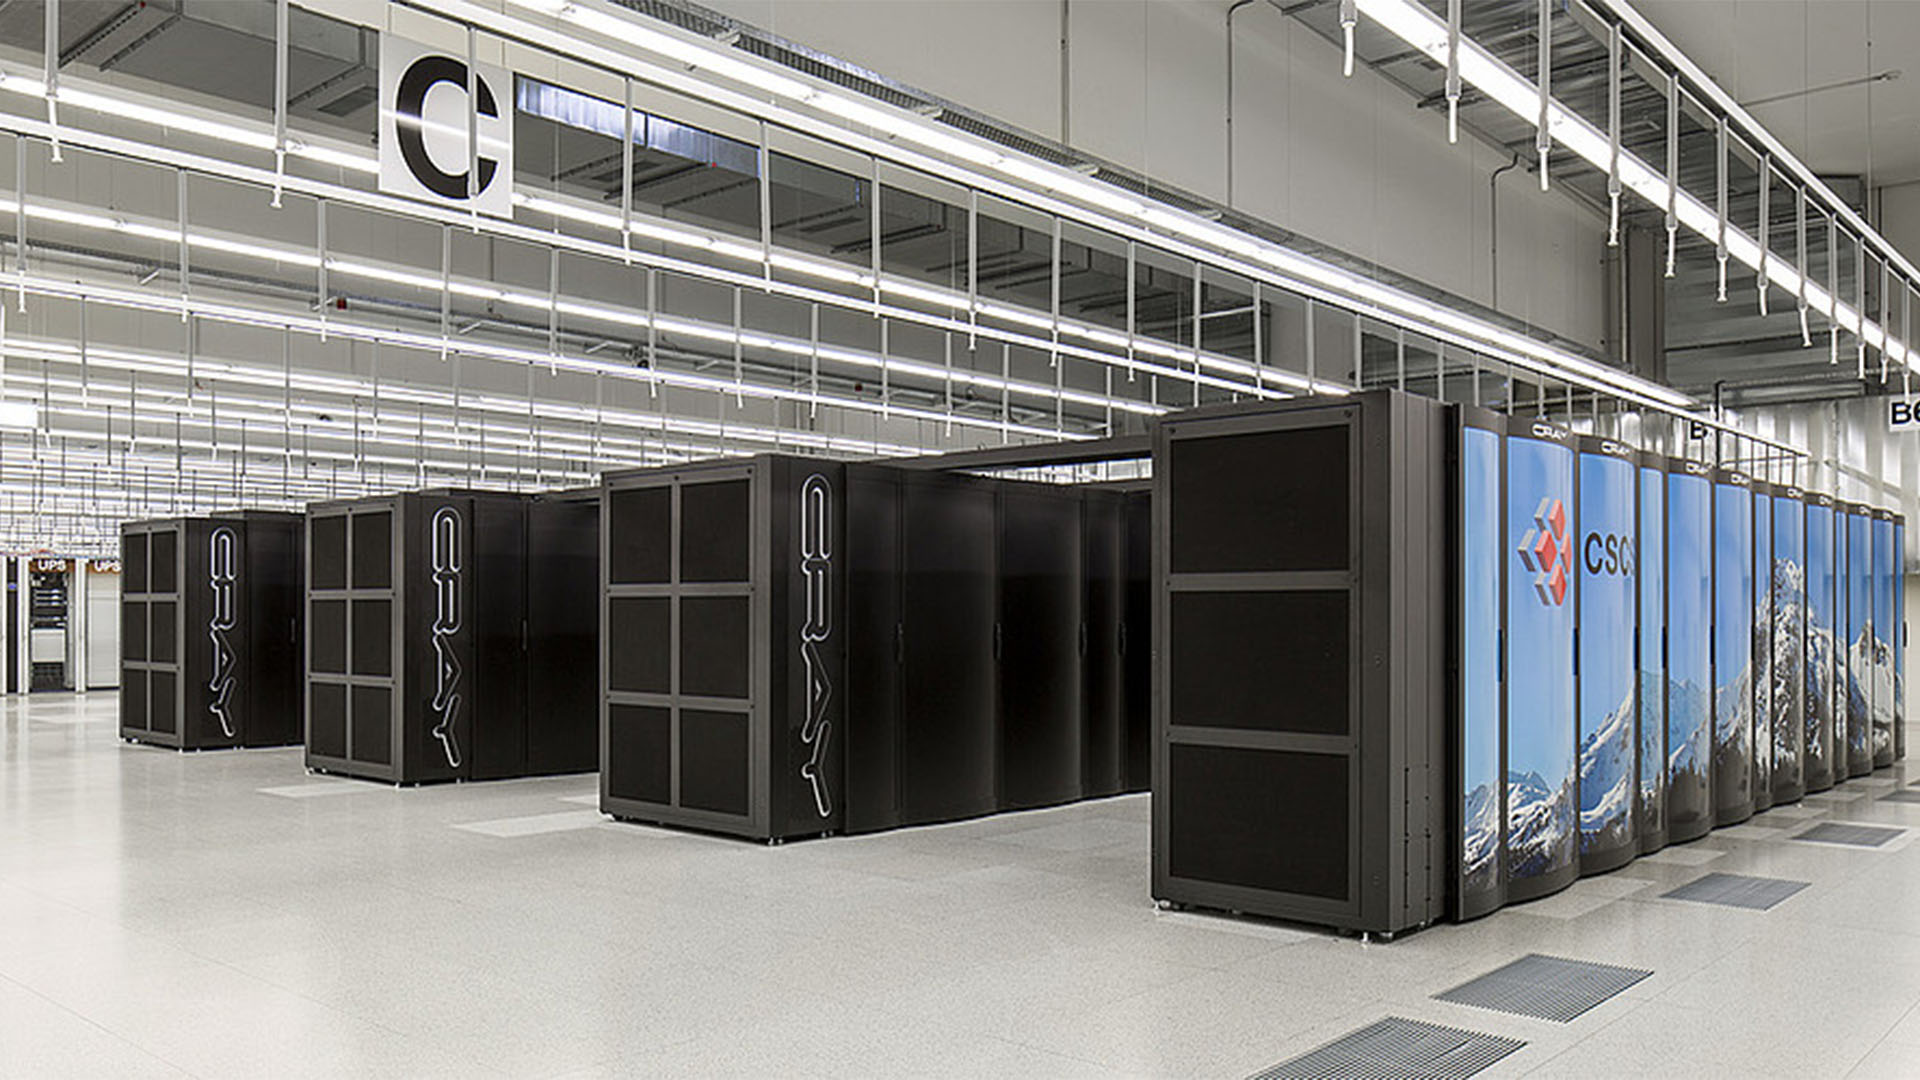 Der Piz Daint Supercomputer beruht auf einem amerikanischen Cray XC40/XC50 System. (© Swiss National Supercomputing Centre)